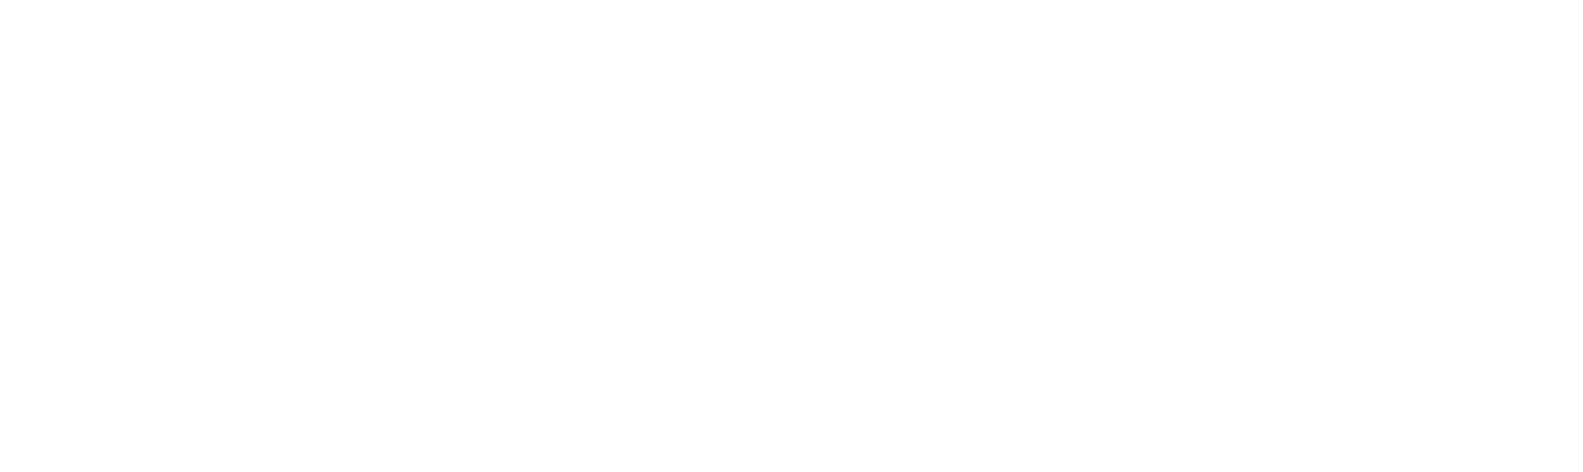 Kodiak Gas Services logo grand pour les fonds sombres (PNG transparent)